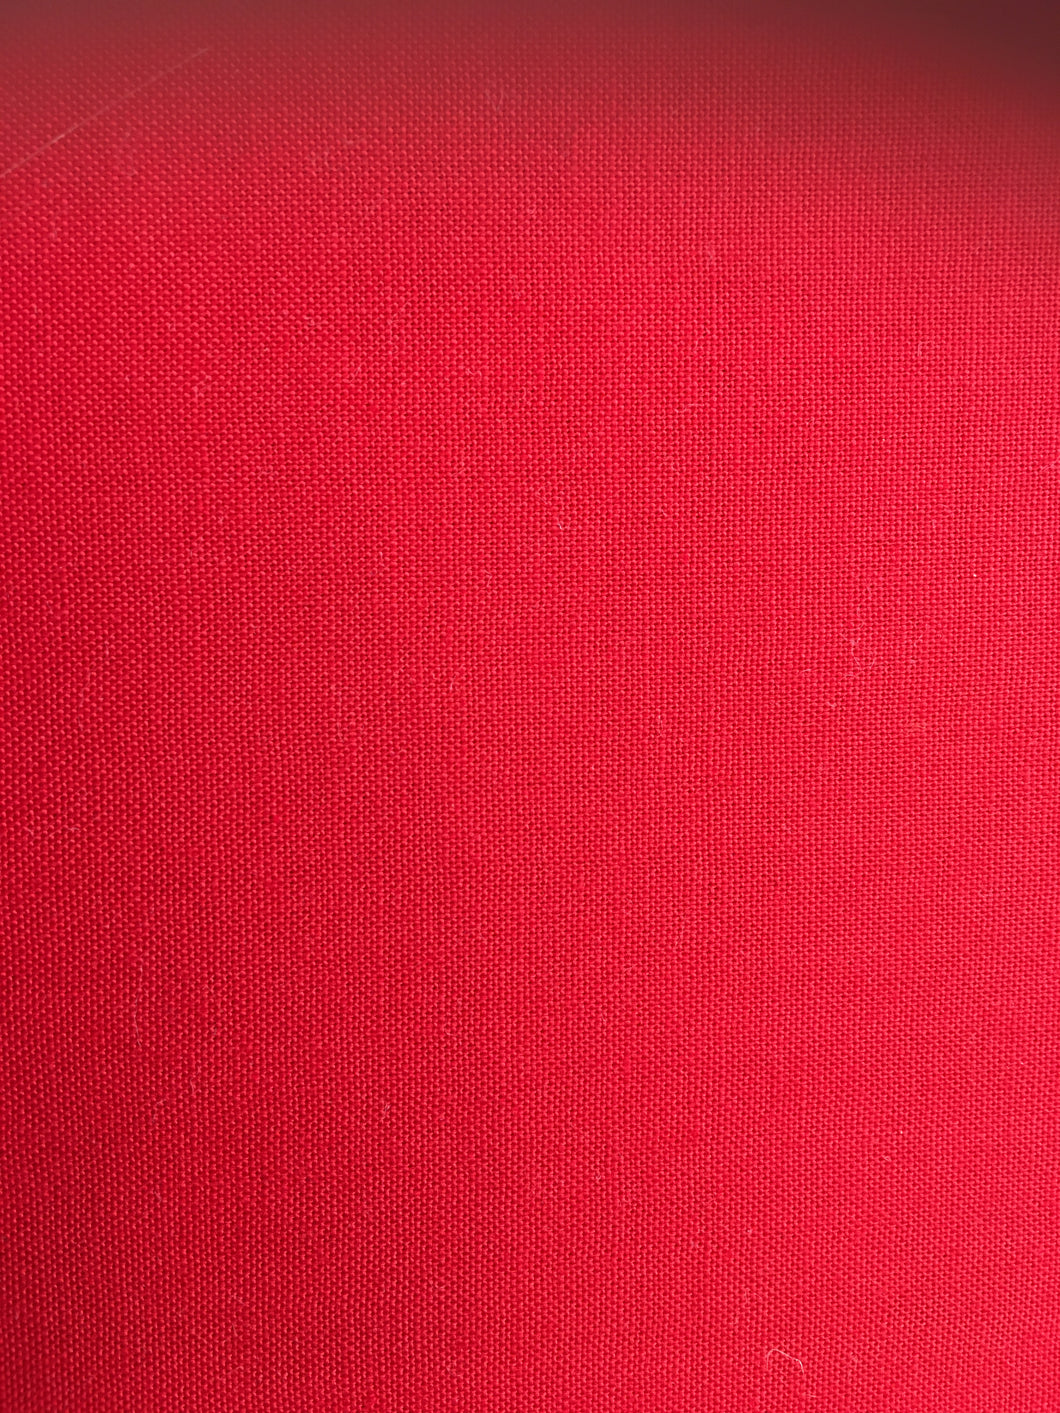 Linen Texture Red